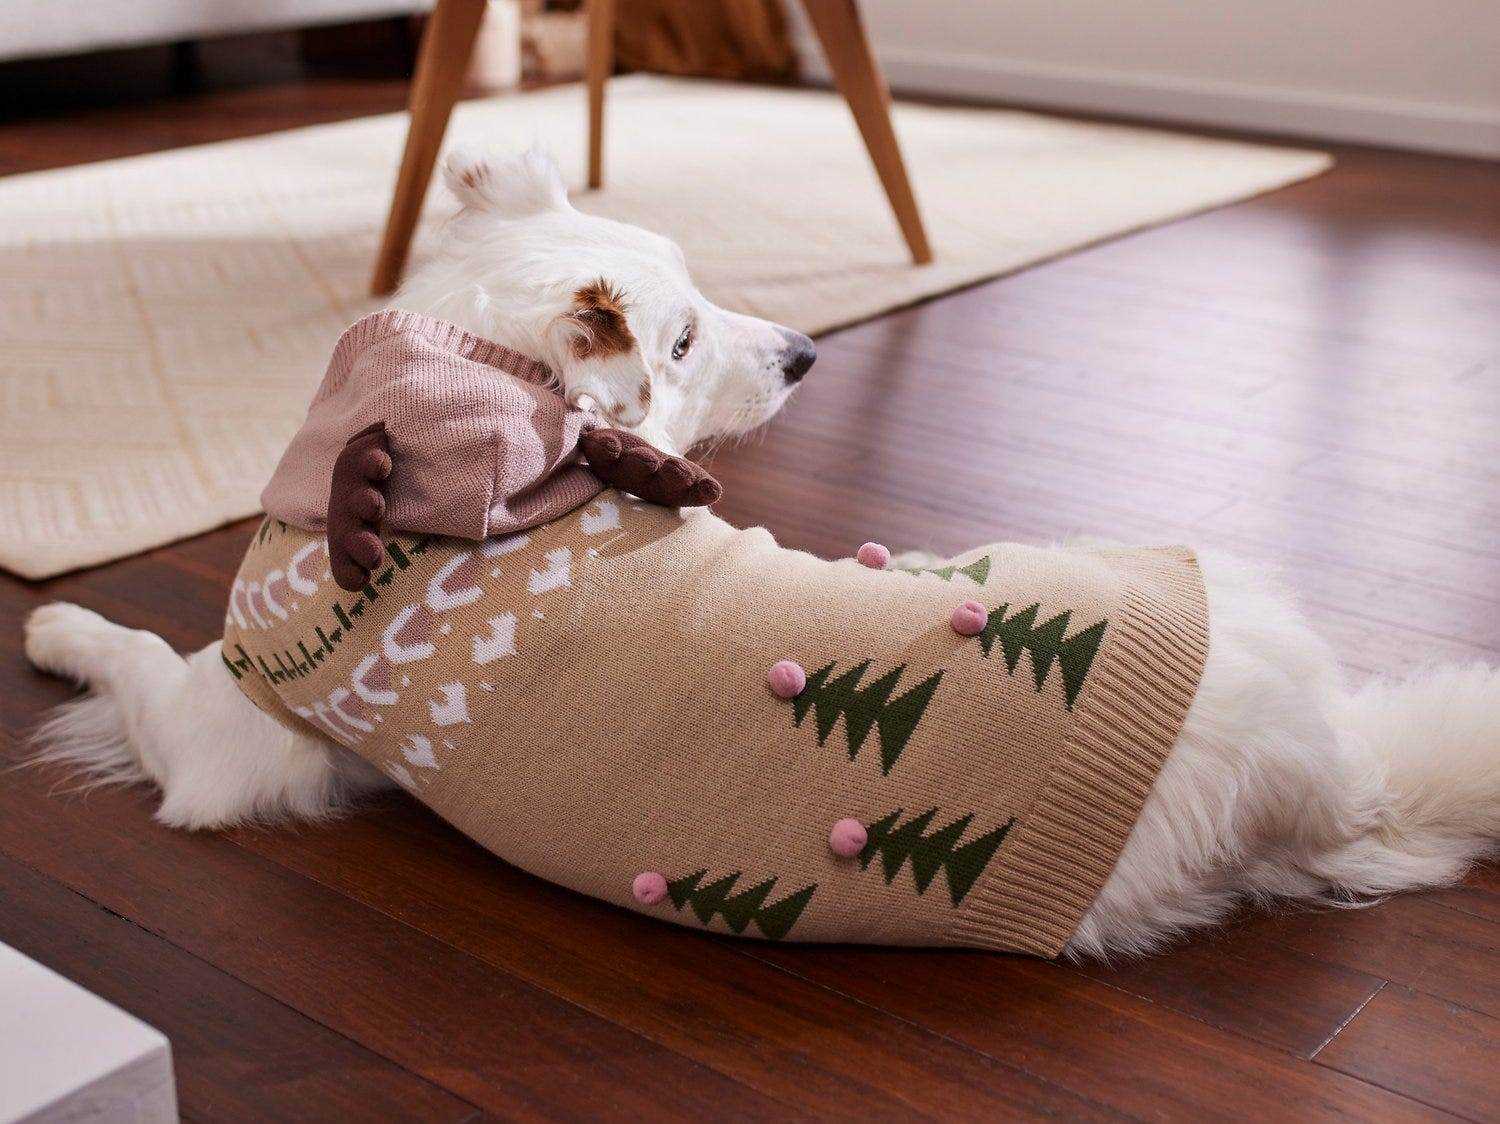 Ein weißer Hund liegt auf einem Holzboden und trägt einen braunen Pullover mit weißen Nähten und grünen Weihnachtsbäumen